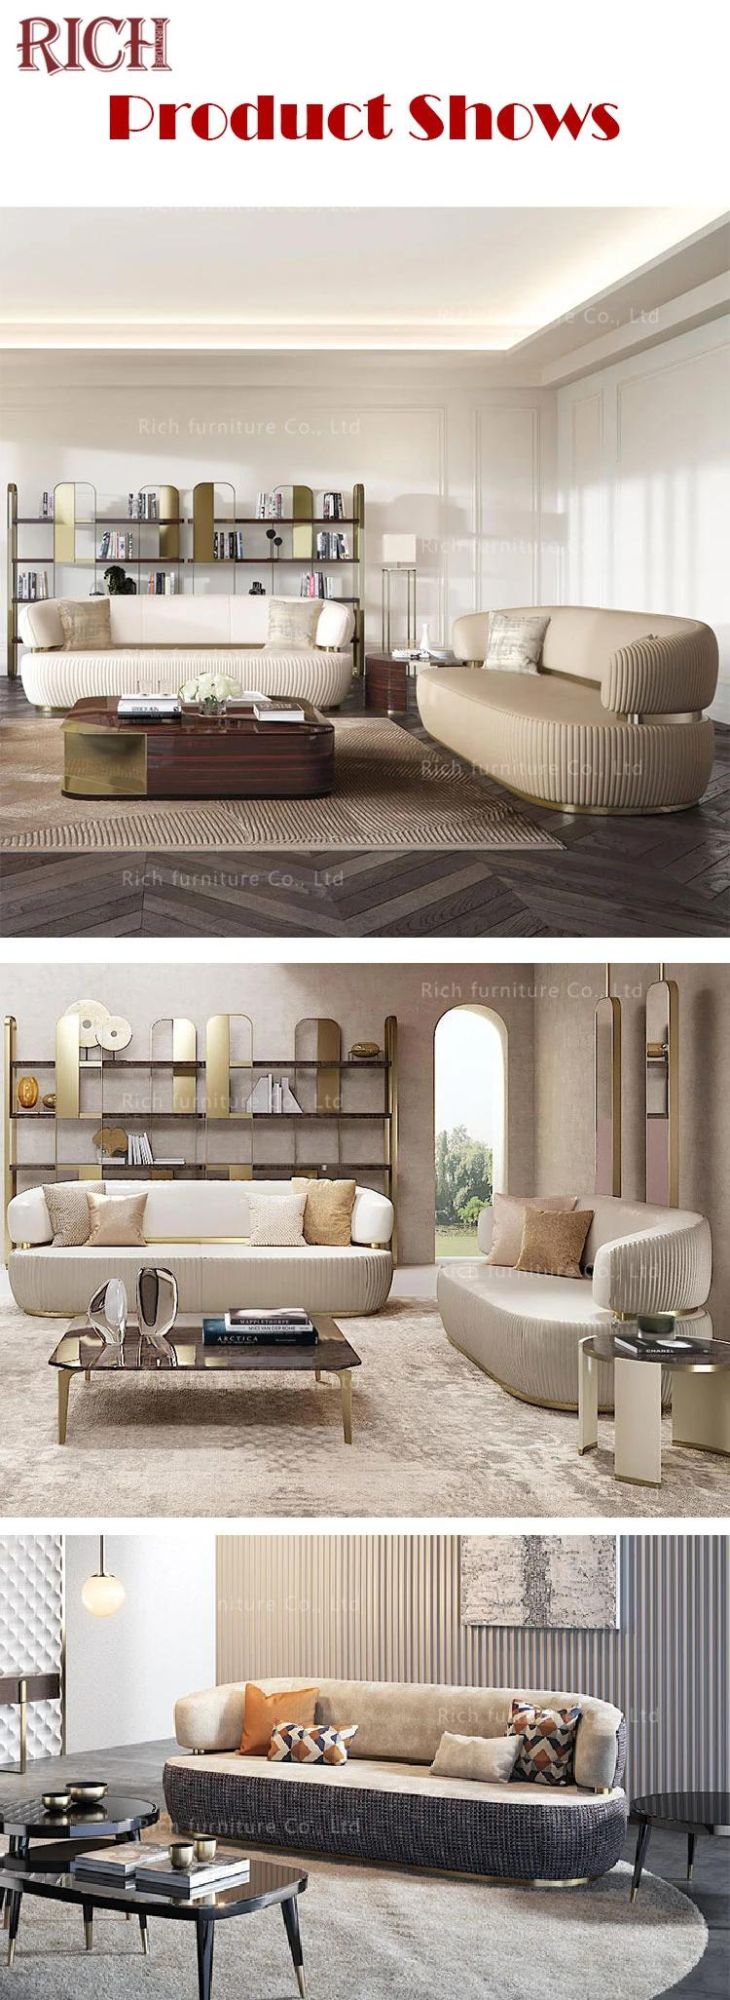 Bon Ton Sofa Canape Italian 3 Seatar Couch Fabric Hotel Modern Nordic Living Room Lounge Sofa